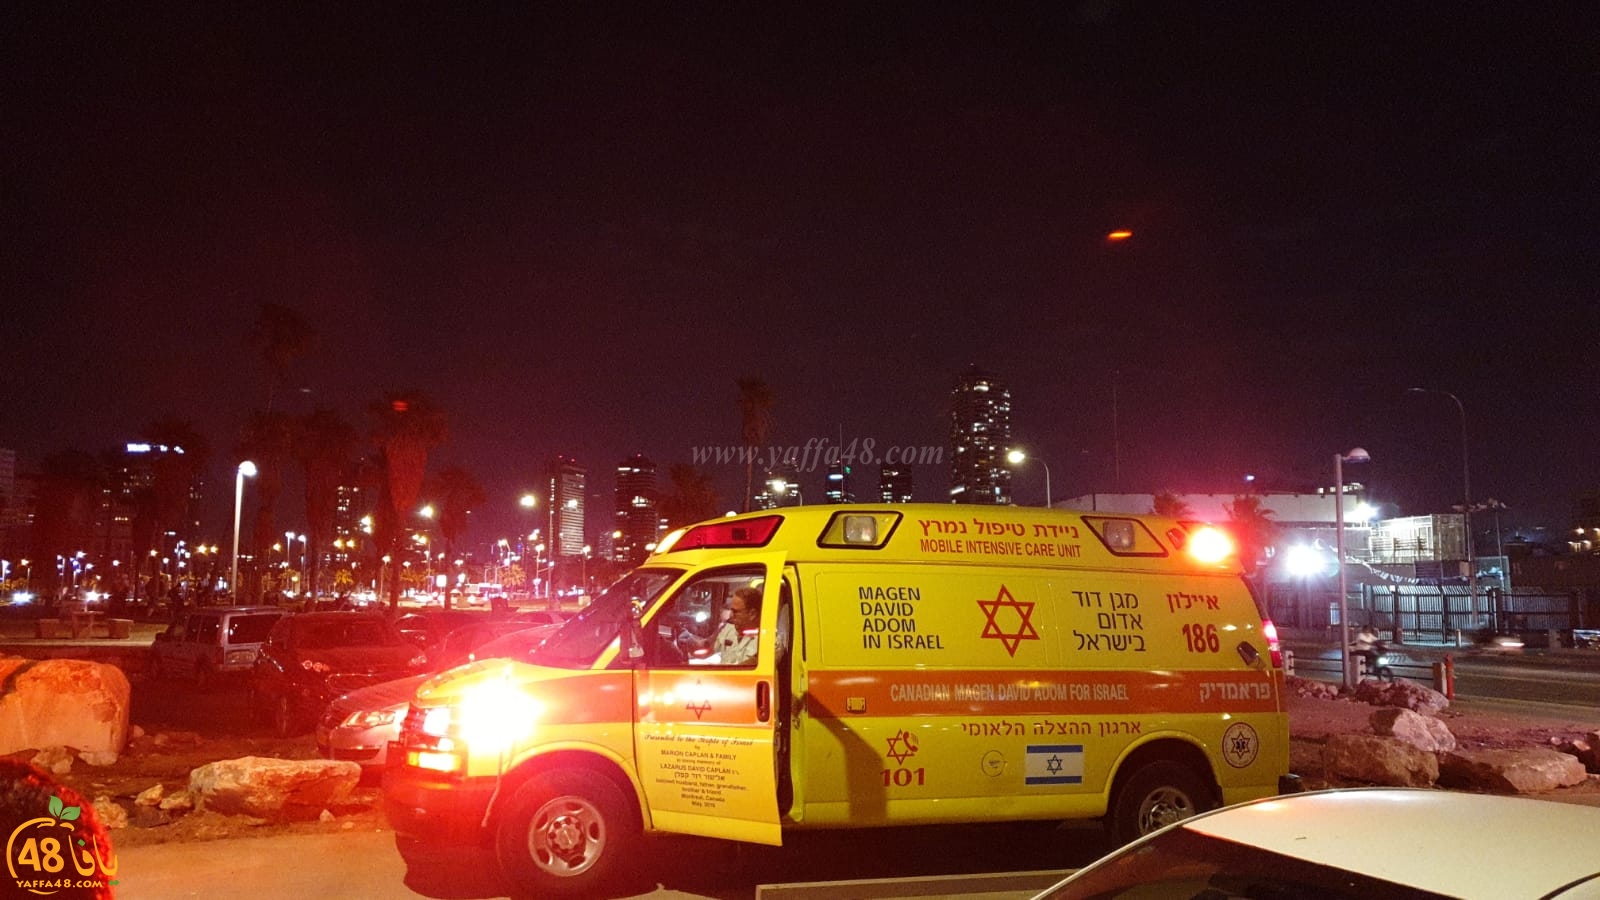  يافا: اصابة متوسطة لراكب دراجة هوائية اثر انزلاقه 